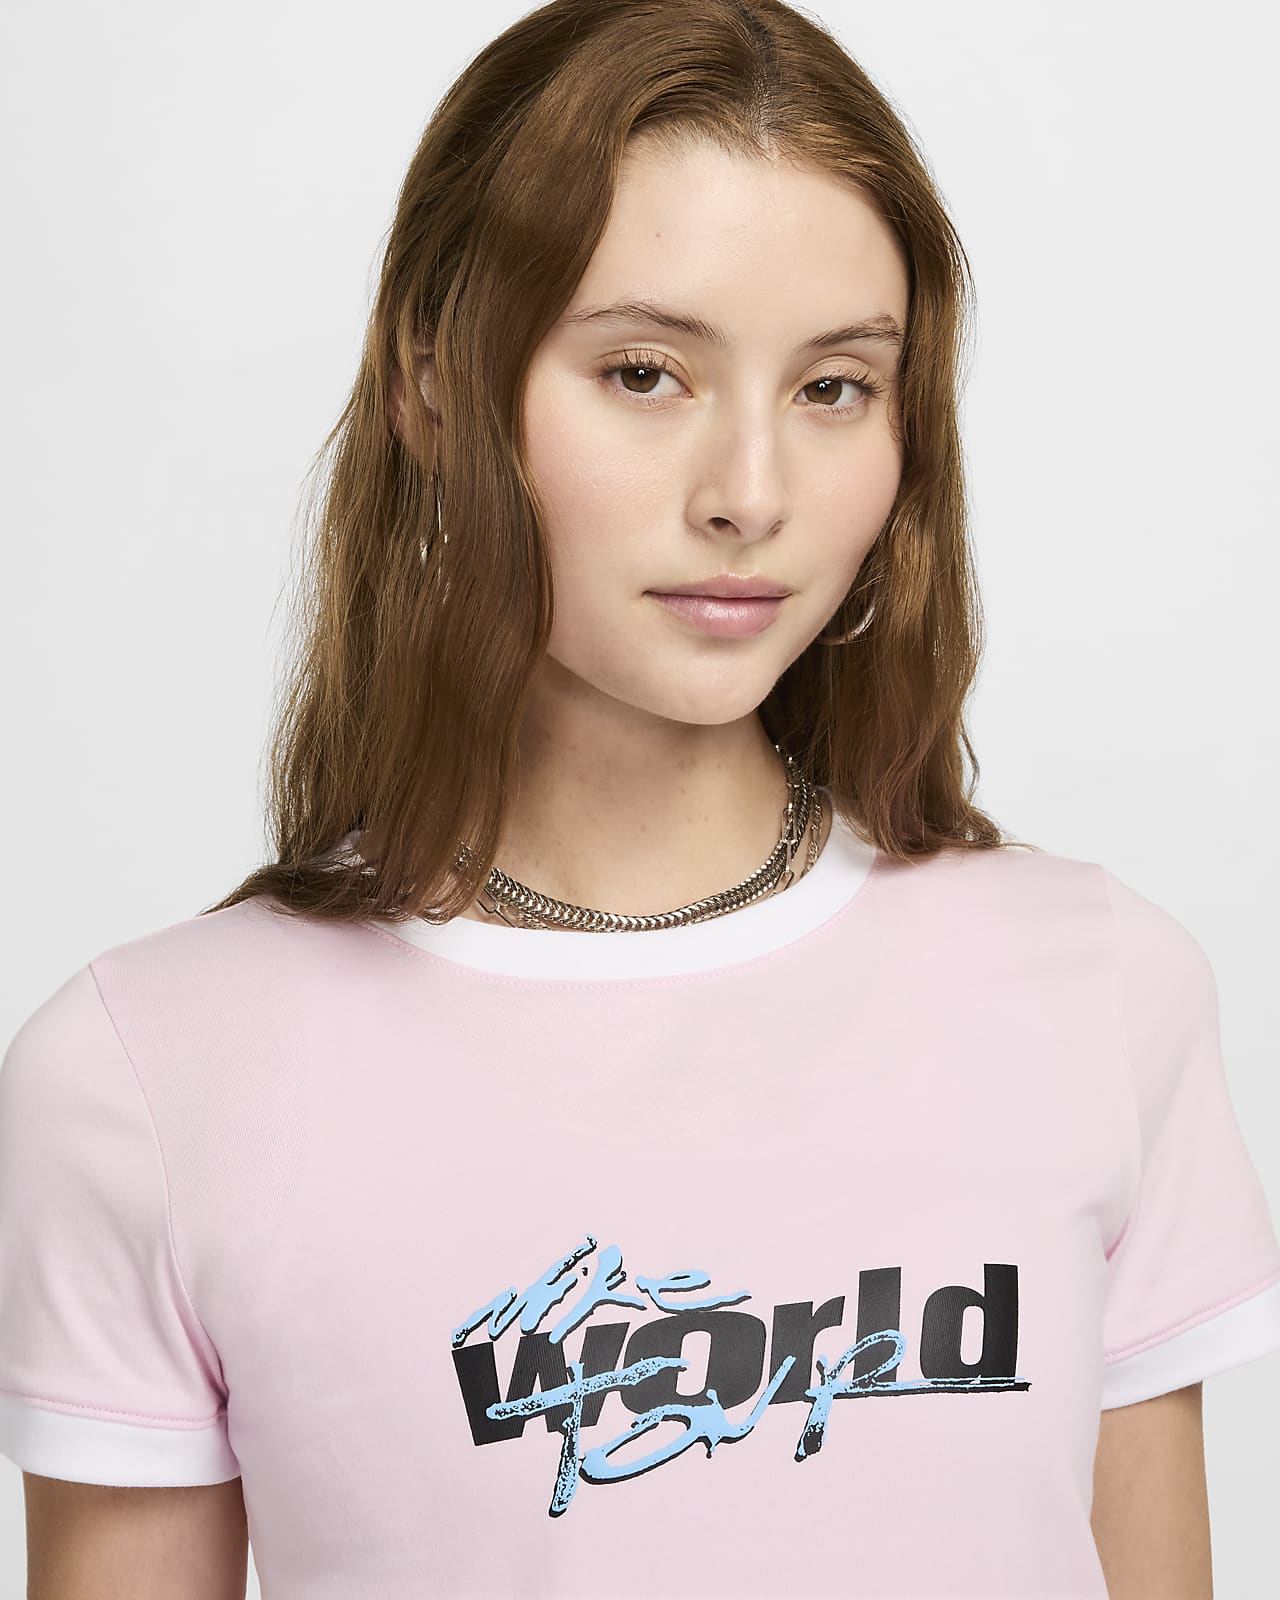 Nike Sportswear Women's Ringer T-Shirt